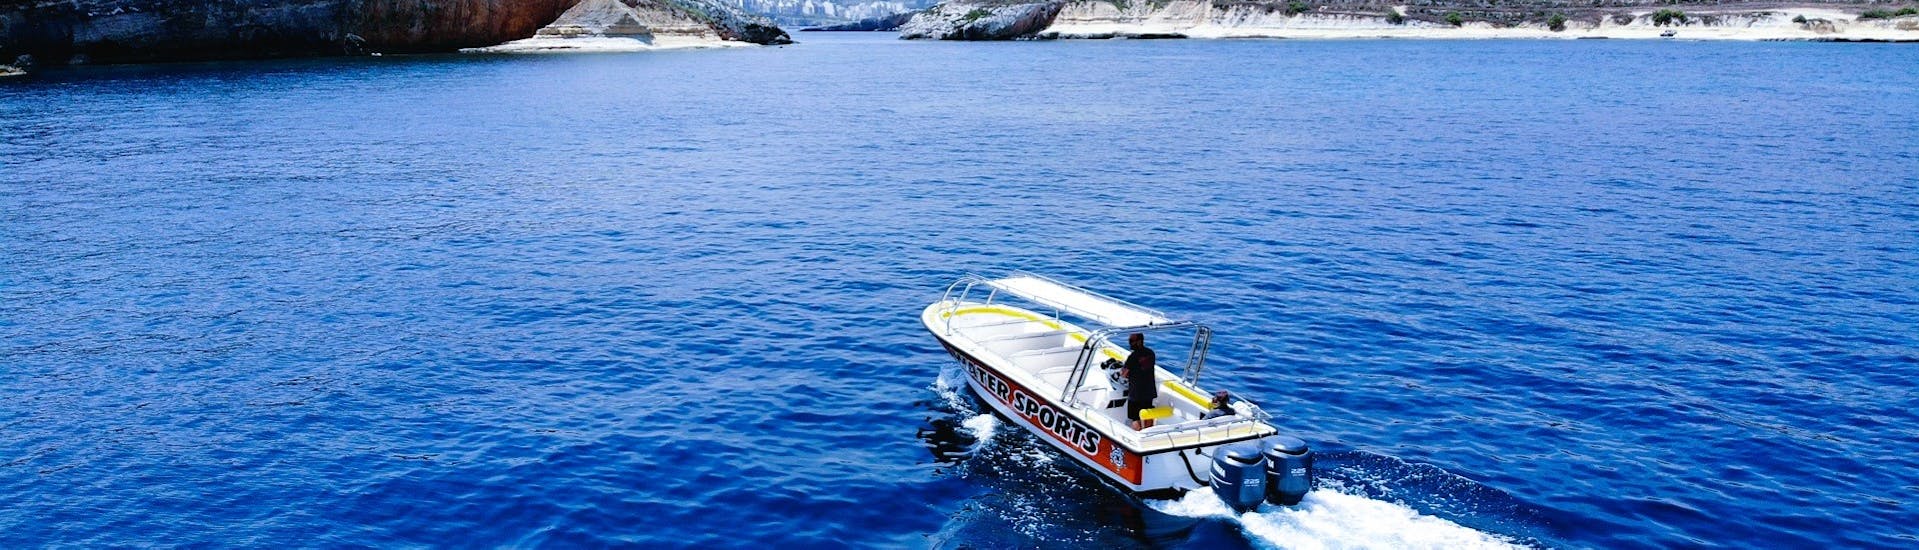 La nostra barca pronta per la Gita in barca da Qawra intorno a Malta & Gozo con Whyknot Cruises Malta.